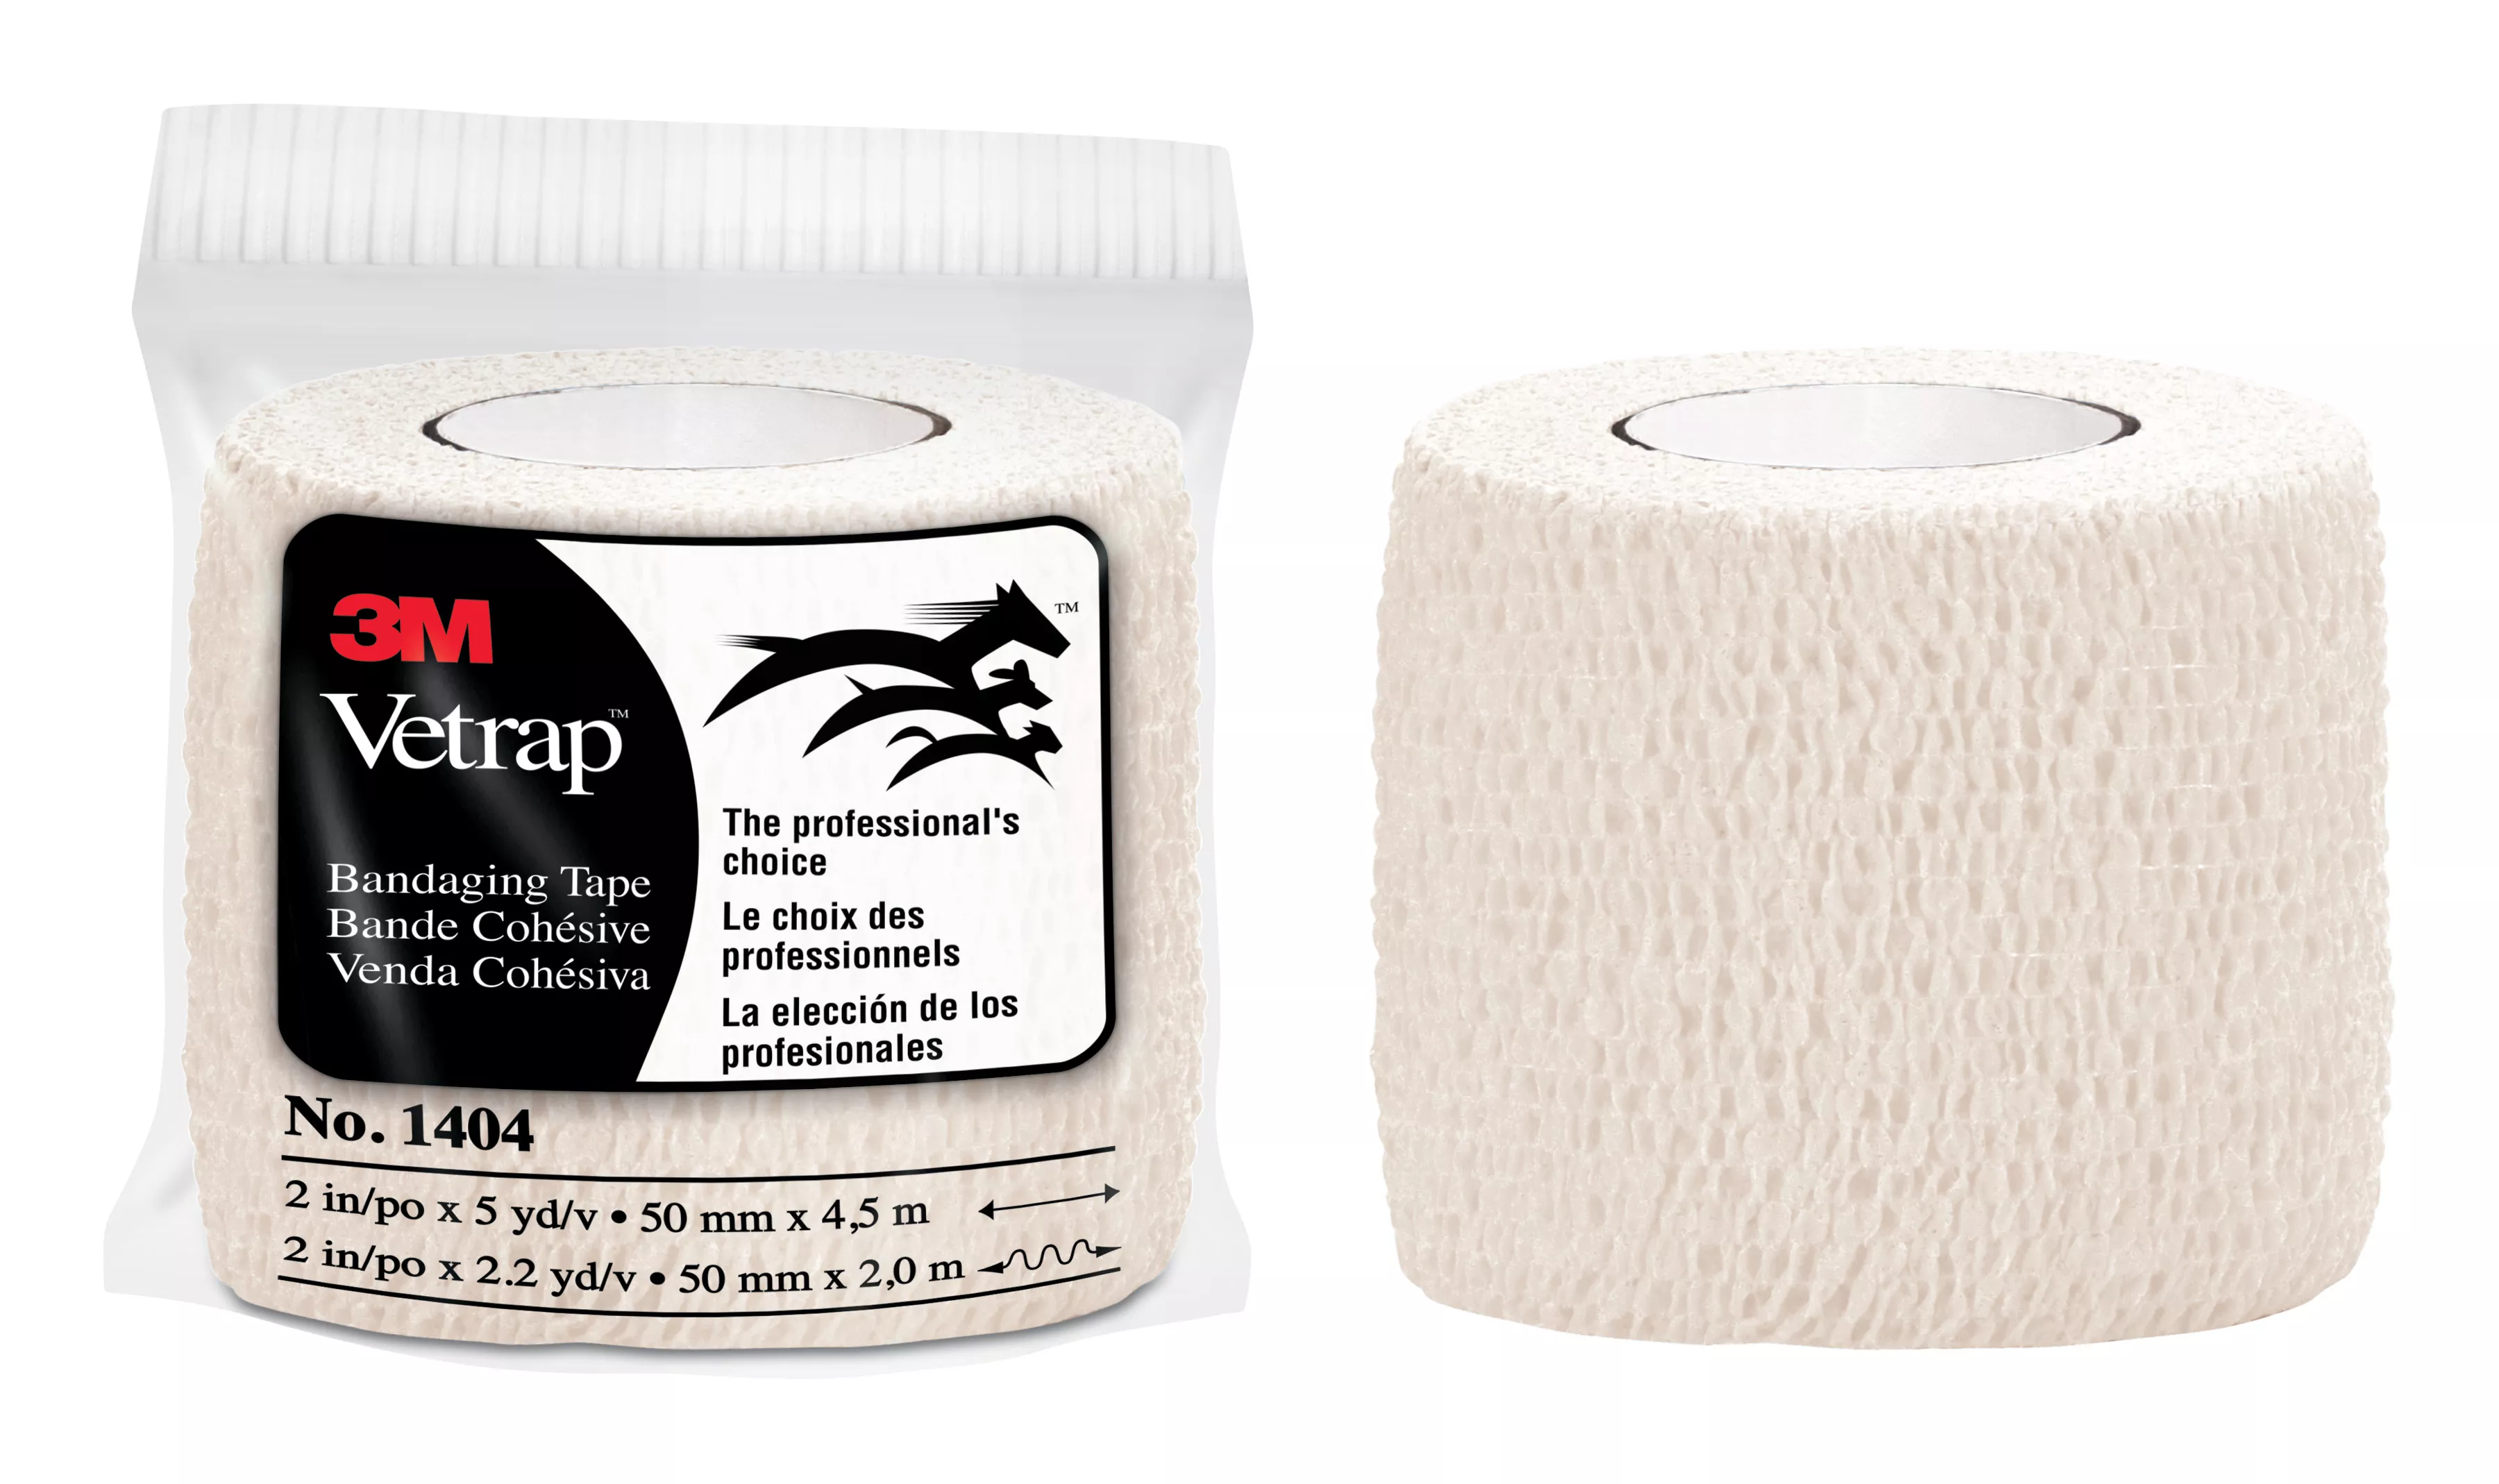 3M™ Vetrap™ Bandaging Tape 1404W-36, White, 2 in x 5 yd (50 mm x 4,5 m),
36 Rolls/Case